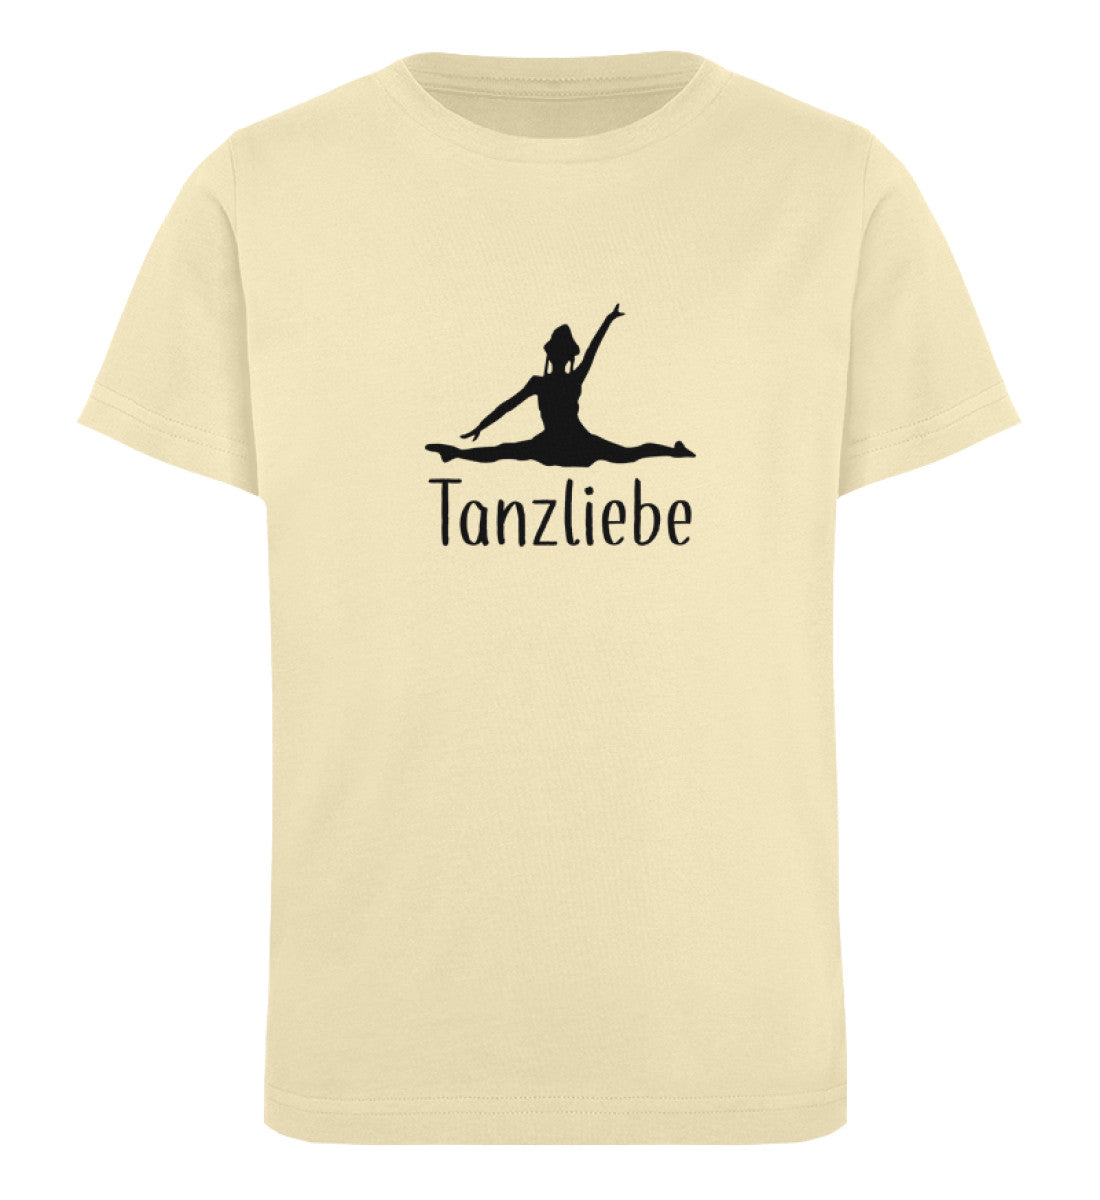 Tanzliebe Kids Organic Shirt - talejo